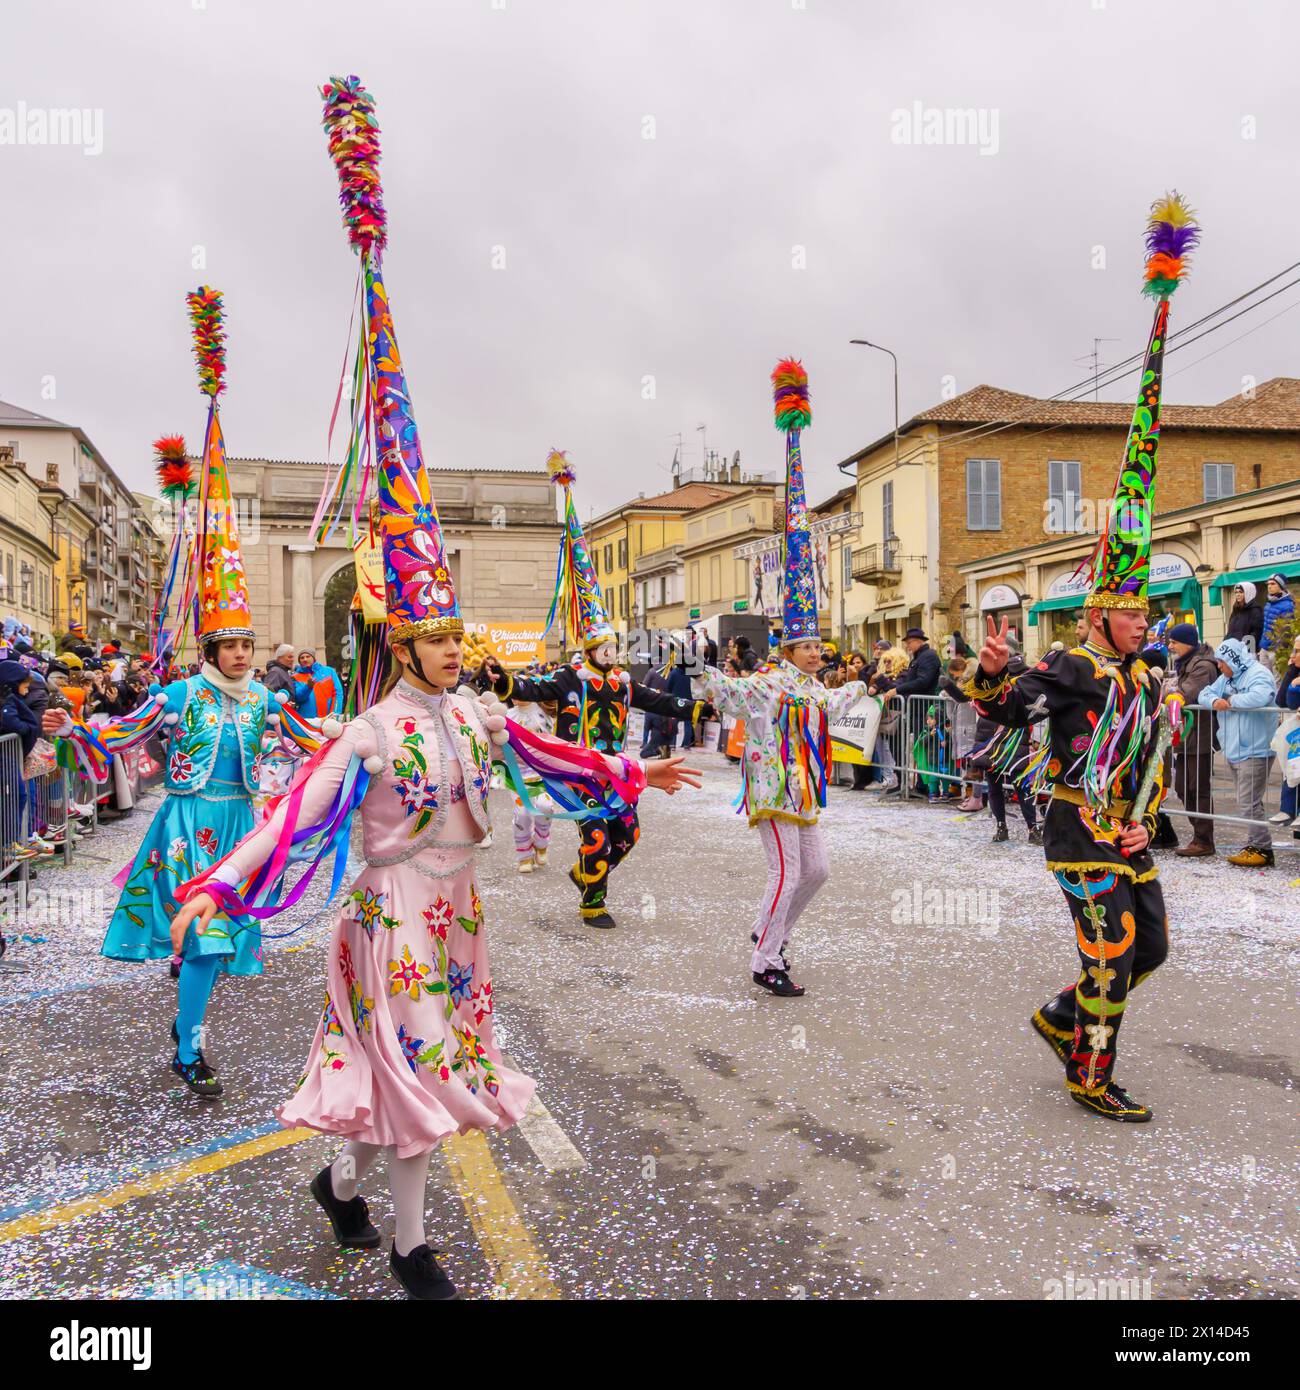 Crema, Italien - 26. Februar 2023: Karnevalsparade mit Tänzern in Kostümen und Menschenmenge in Crema, Lombardei, Norditalien Stockfoto